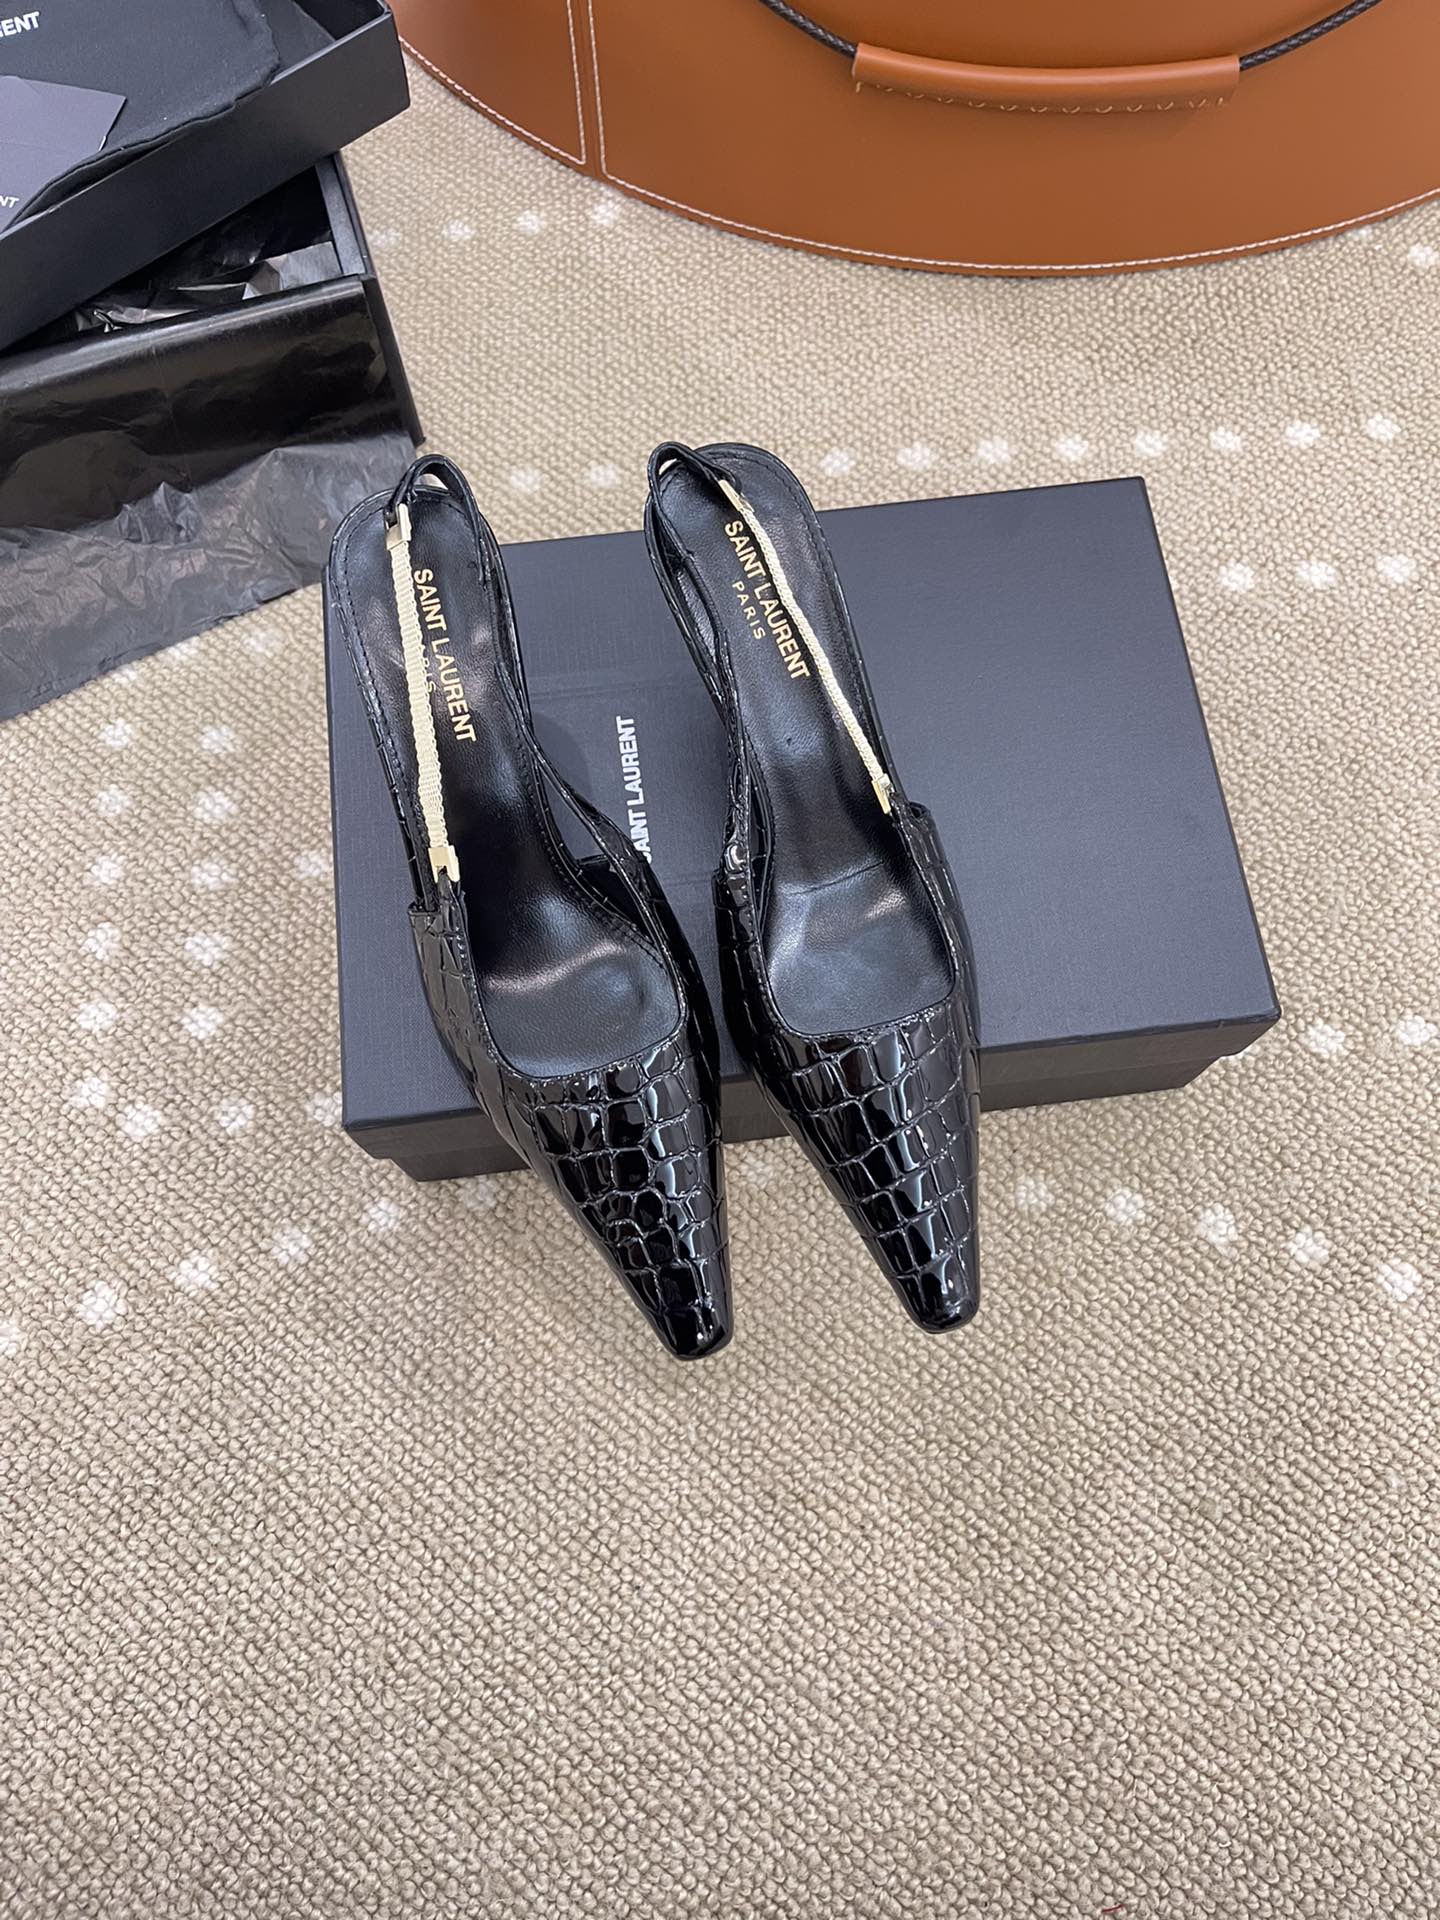 Yves Saint Laurent Schuhe Pumps Mit Hohem Absatz Sandalen Rot Lackleder Vintage